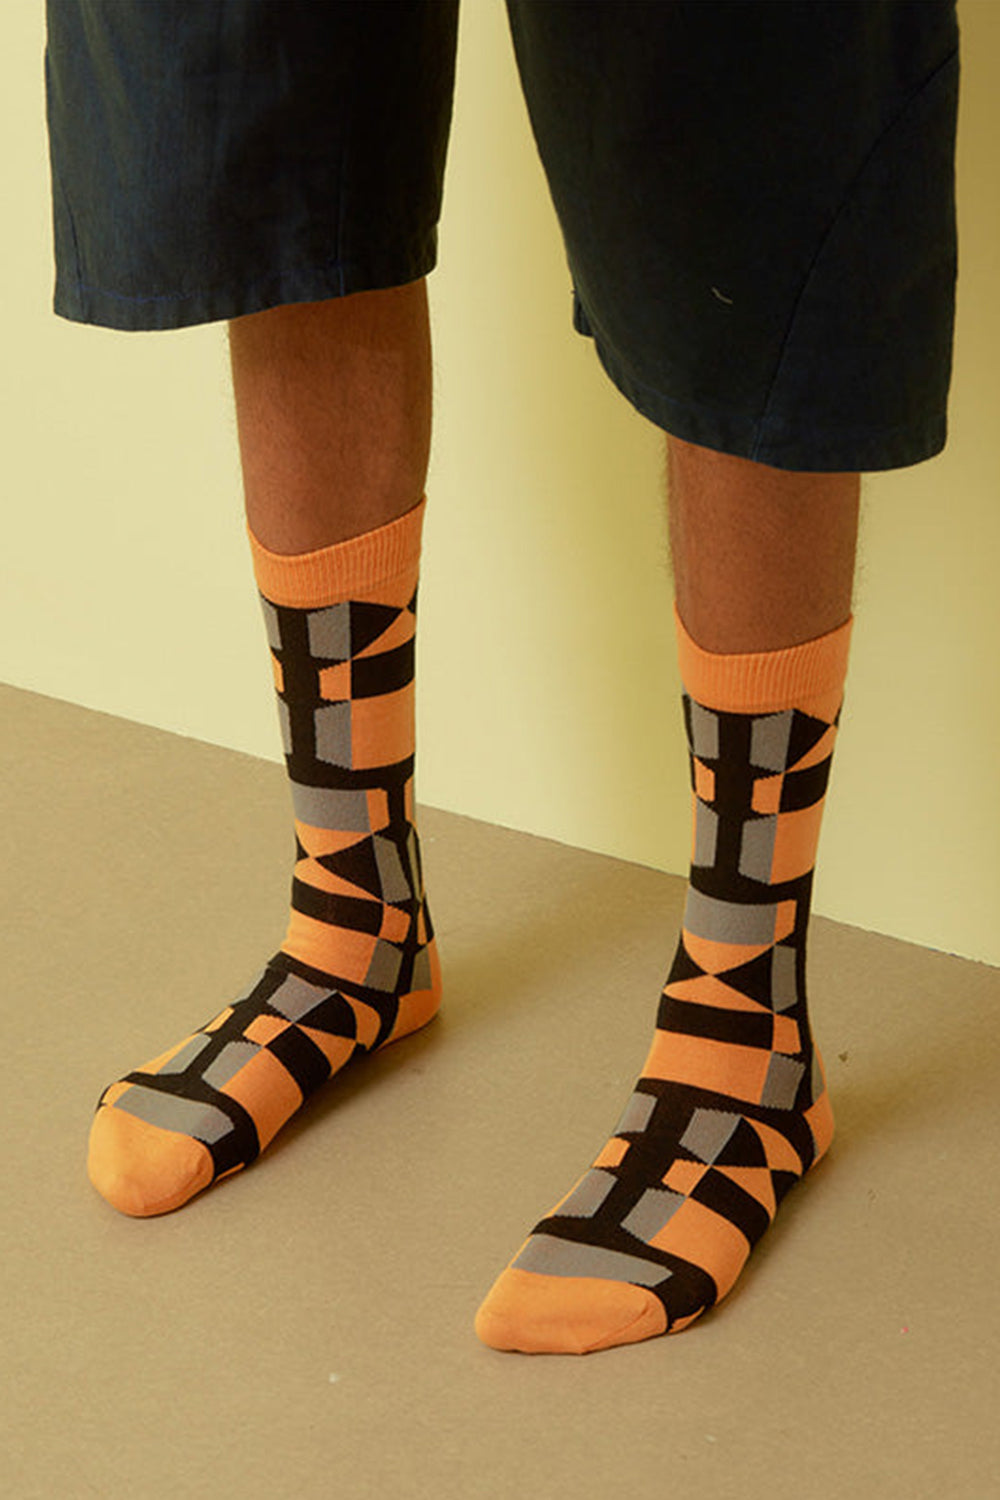 Unfolded Socks Homme, orange